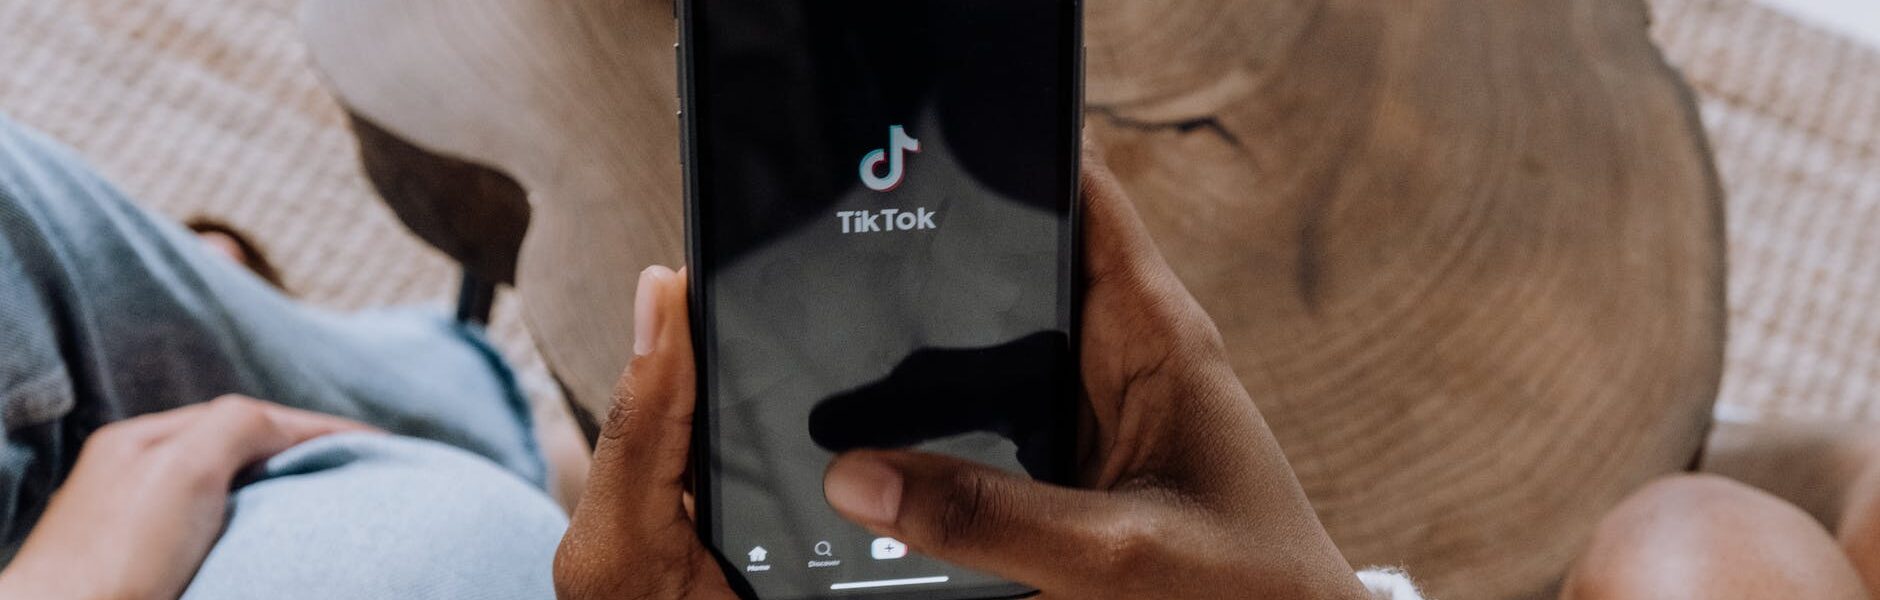 Top 10: estas fueron las canciones más utilizadas de TikTok este 2021